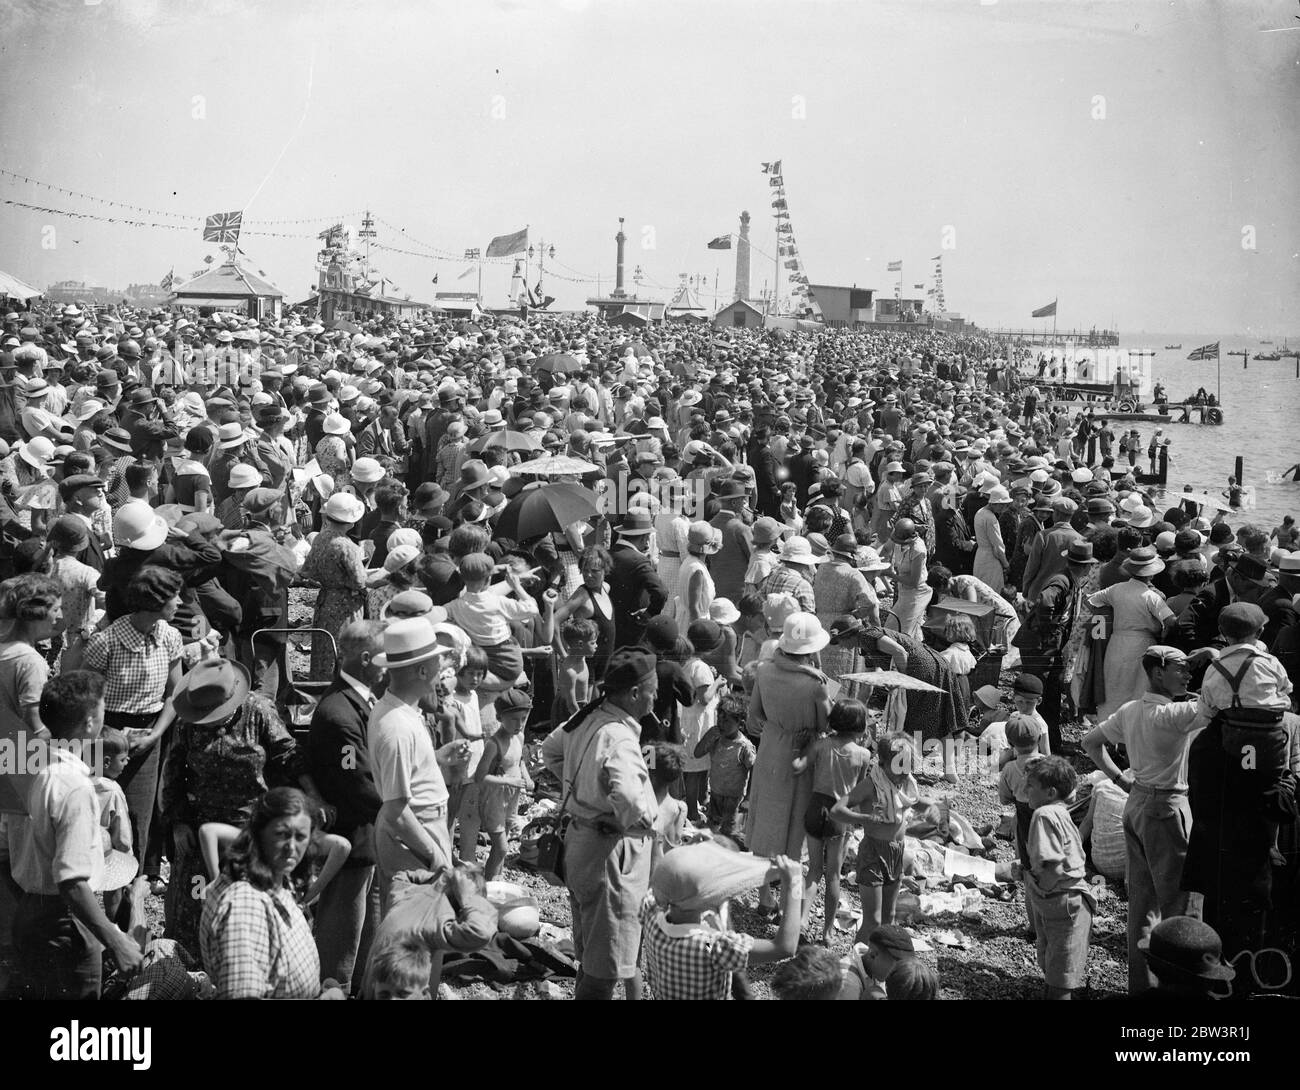 Riesige Menschenmassen in Portsmouth für eine Bewertung. Tolle Menschenmassen warten auf der Portsmouth bis Gosport Fähranlegestelle, um Boote zu ihren Positionen für die King 's Marine Review zu bekommen. Die Royal Yacht Victoria und Albert ist im Hintergrund. 16 Juli 1935 Stockfoto